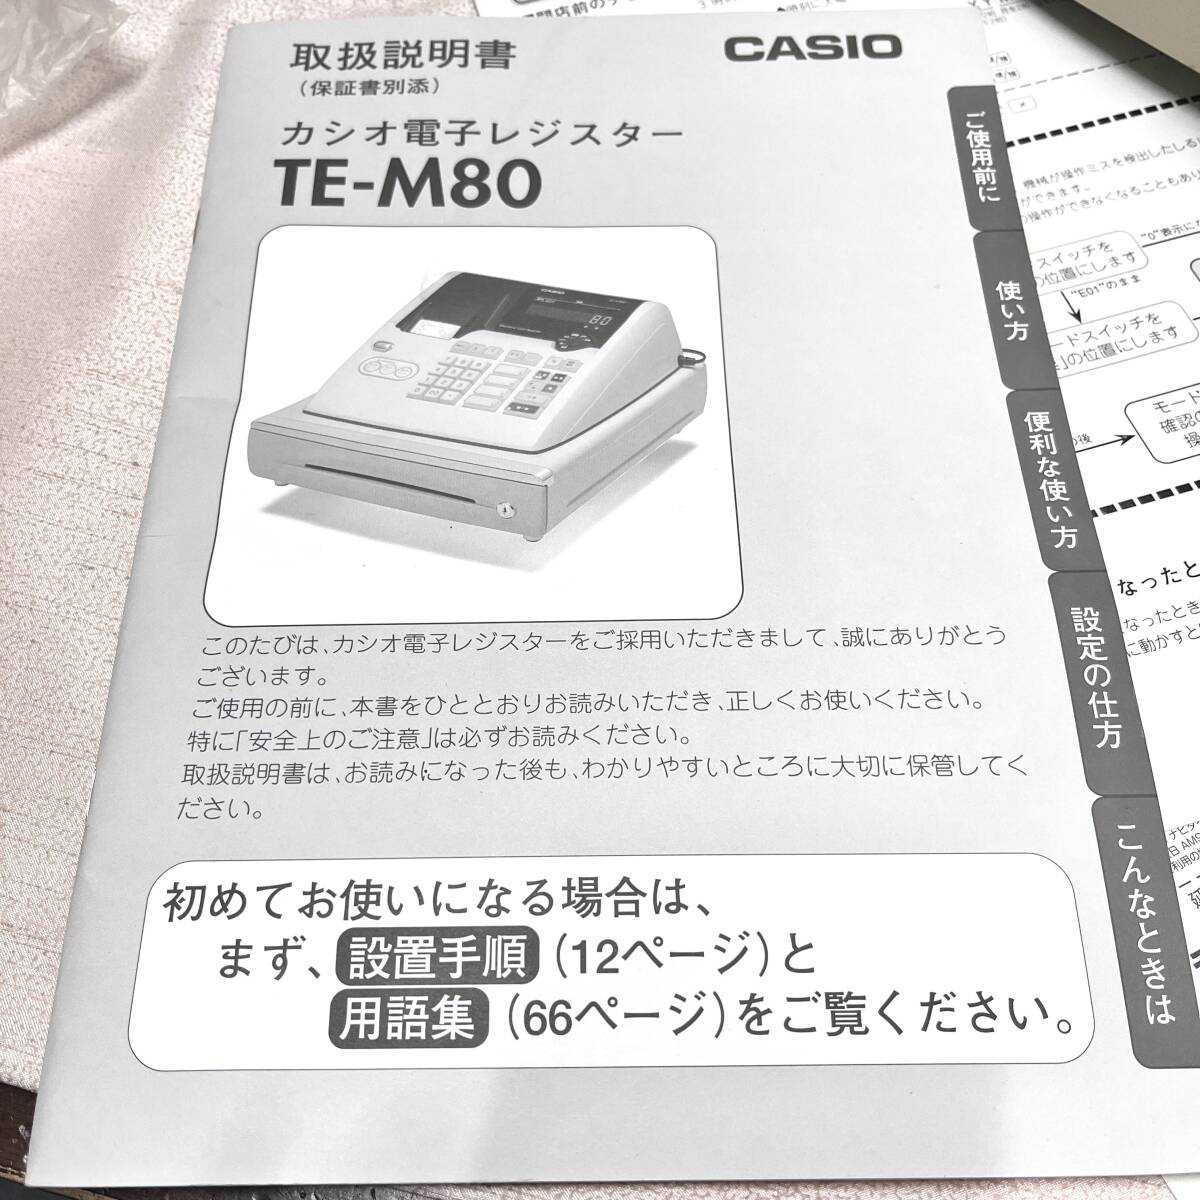 CASIO Casio электронный резистор TE-M80 есть руководство пользователя . источник питания OK!!(4128) рабочее состояние подтверждено 